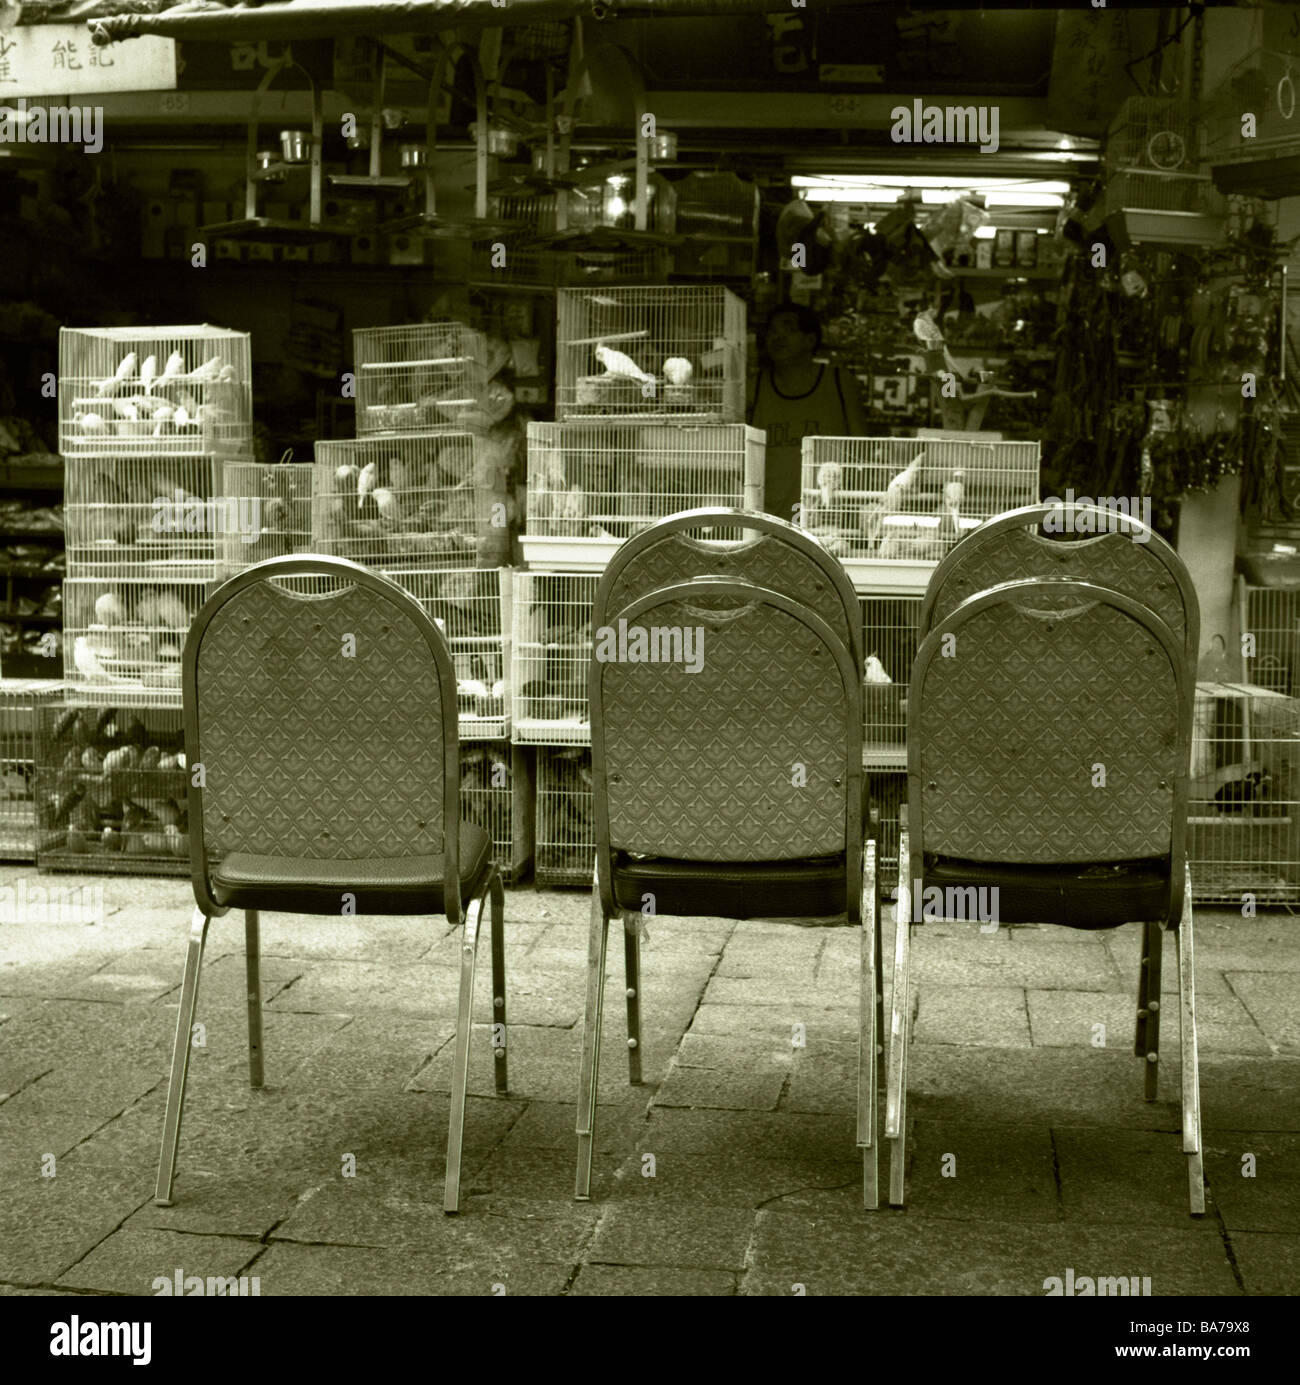 Chine Hong Kong Kowloon-oiseaux oiseaux cages marché vide chaises s/w Asie Asie de l'Est rue Marché aux oiseaux vente de district des cages Banque D'Images